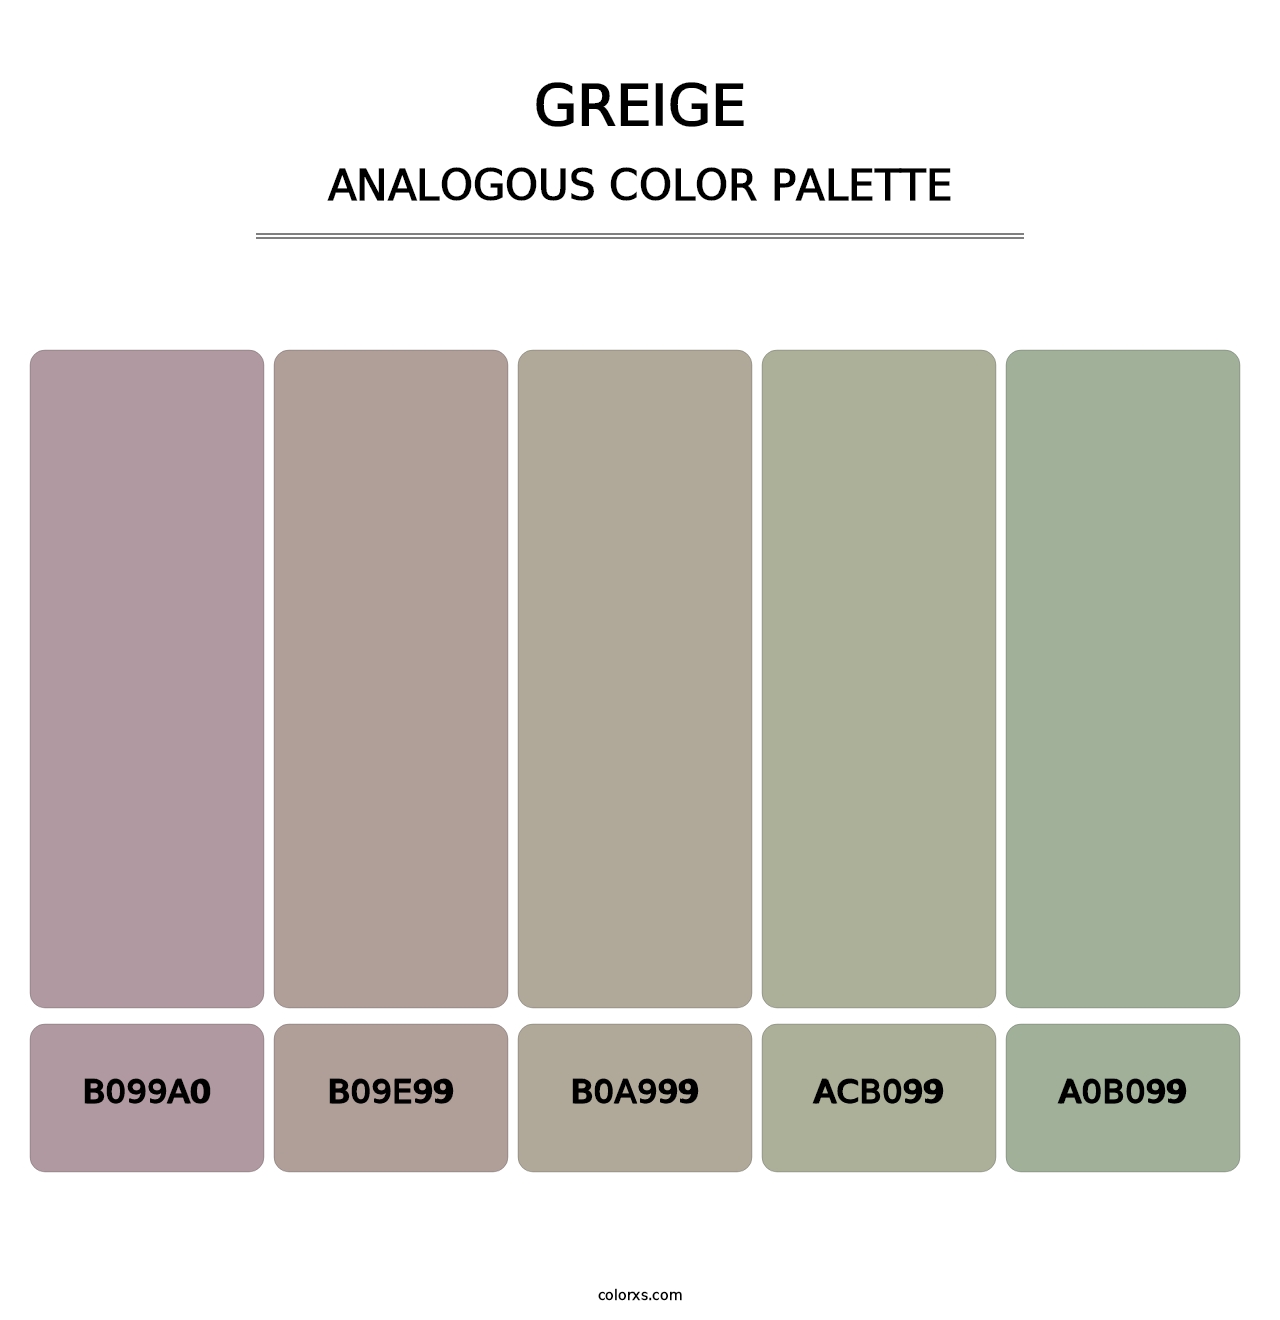 Greige - Analogous Color Palette